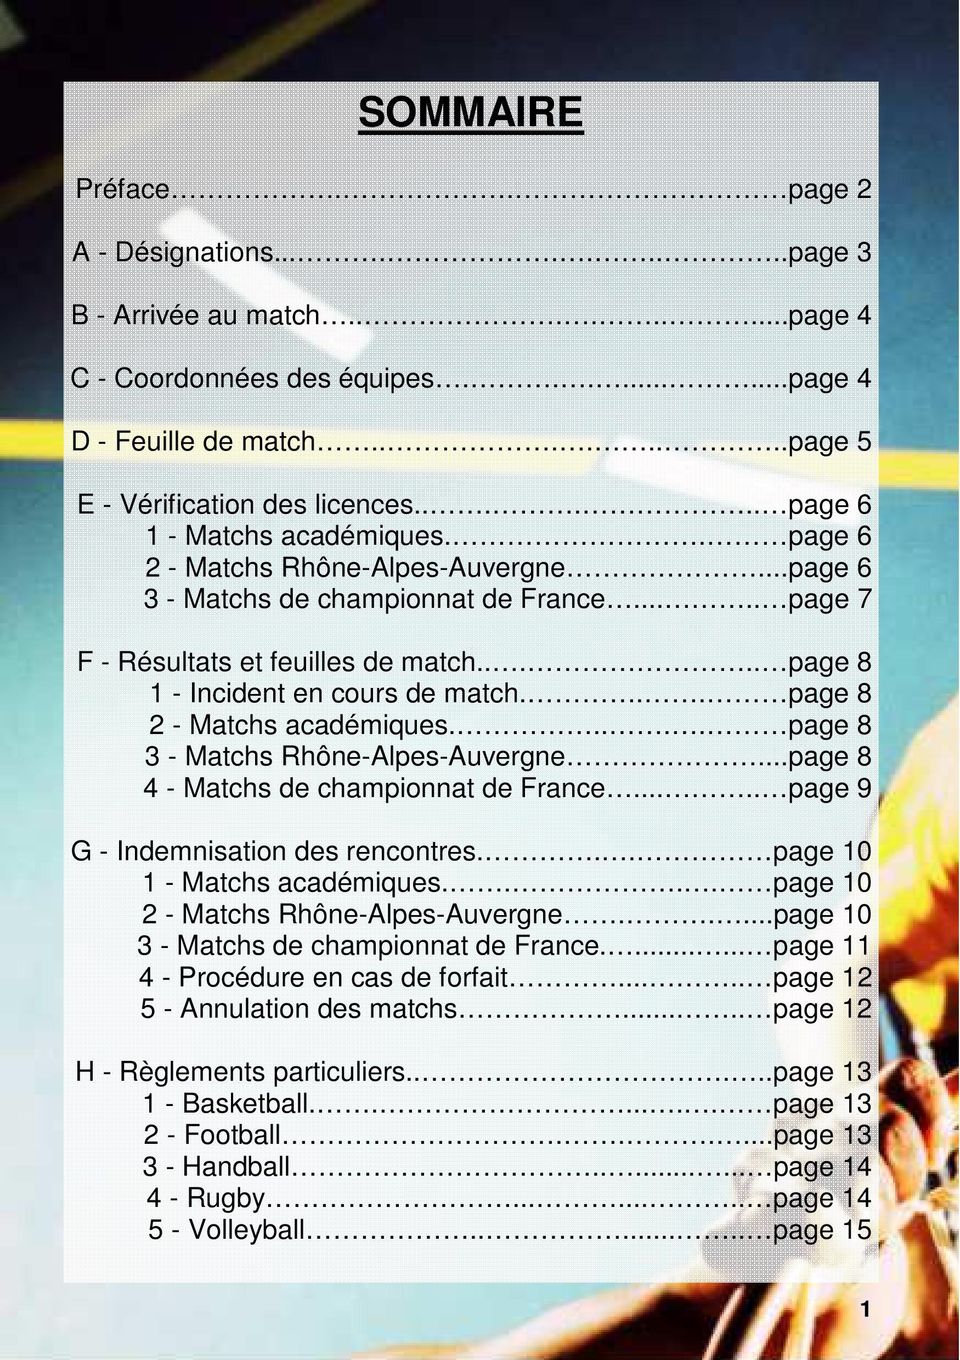 .... page 8 1 - Incident en cours de match... page 8 2 - Matchs académiques..... page 8 3 - Matchs Rhône-Alpes-Auvergne...page 8 4 - Matchs de championnat de France.